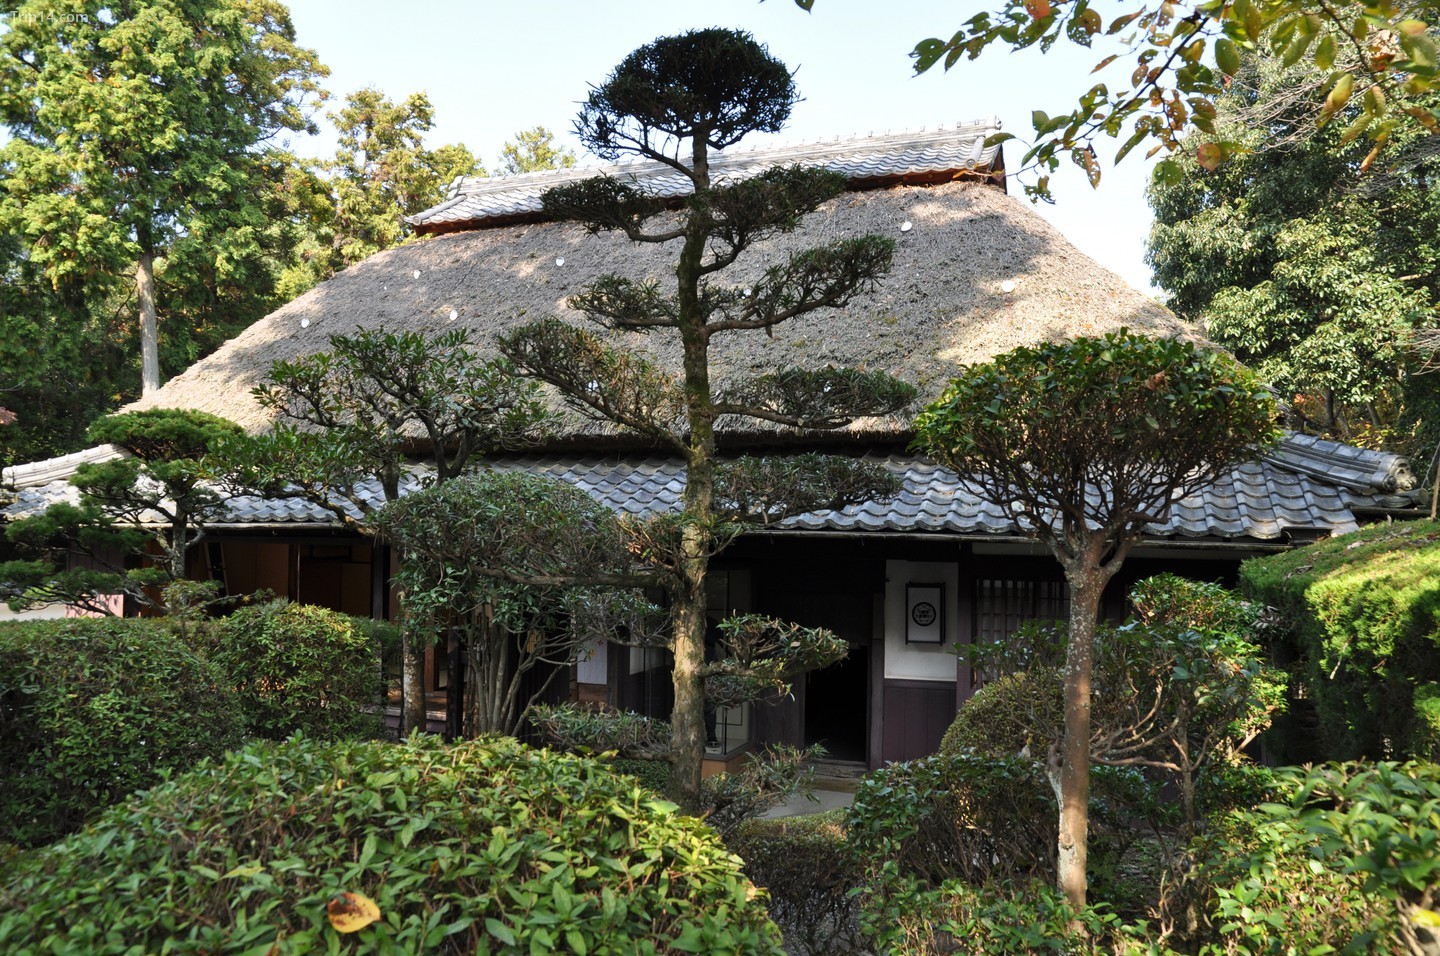  Nhà và Bảo tàng Ninja, ở Iga Ueno, có lẽ là ví dụ hiện đại xác thực nhất về kiểu xây dựng này   |   